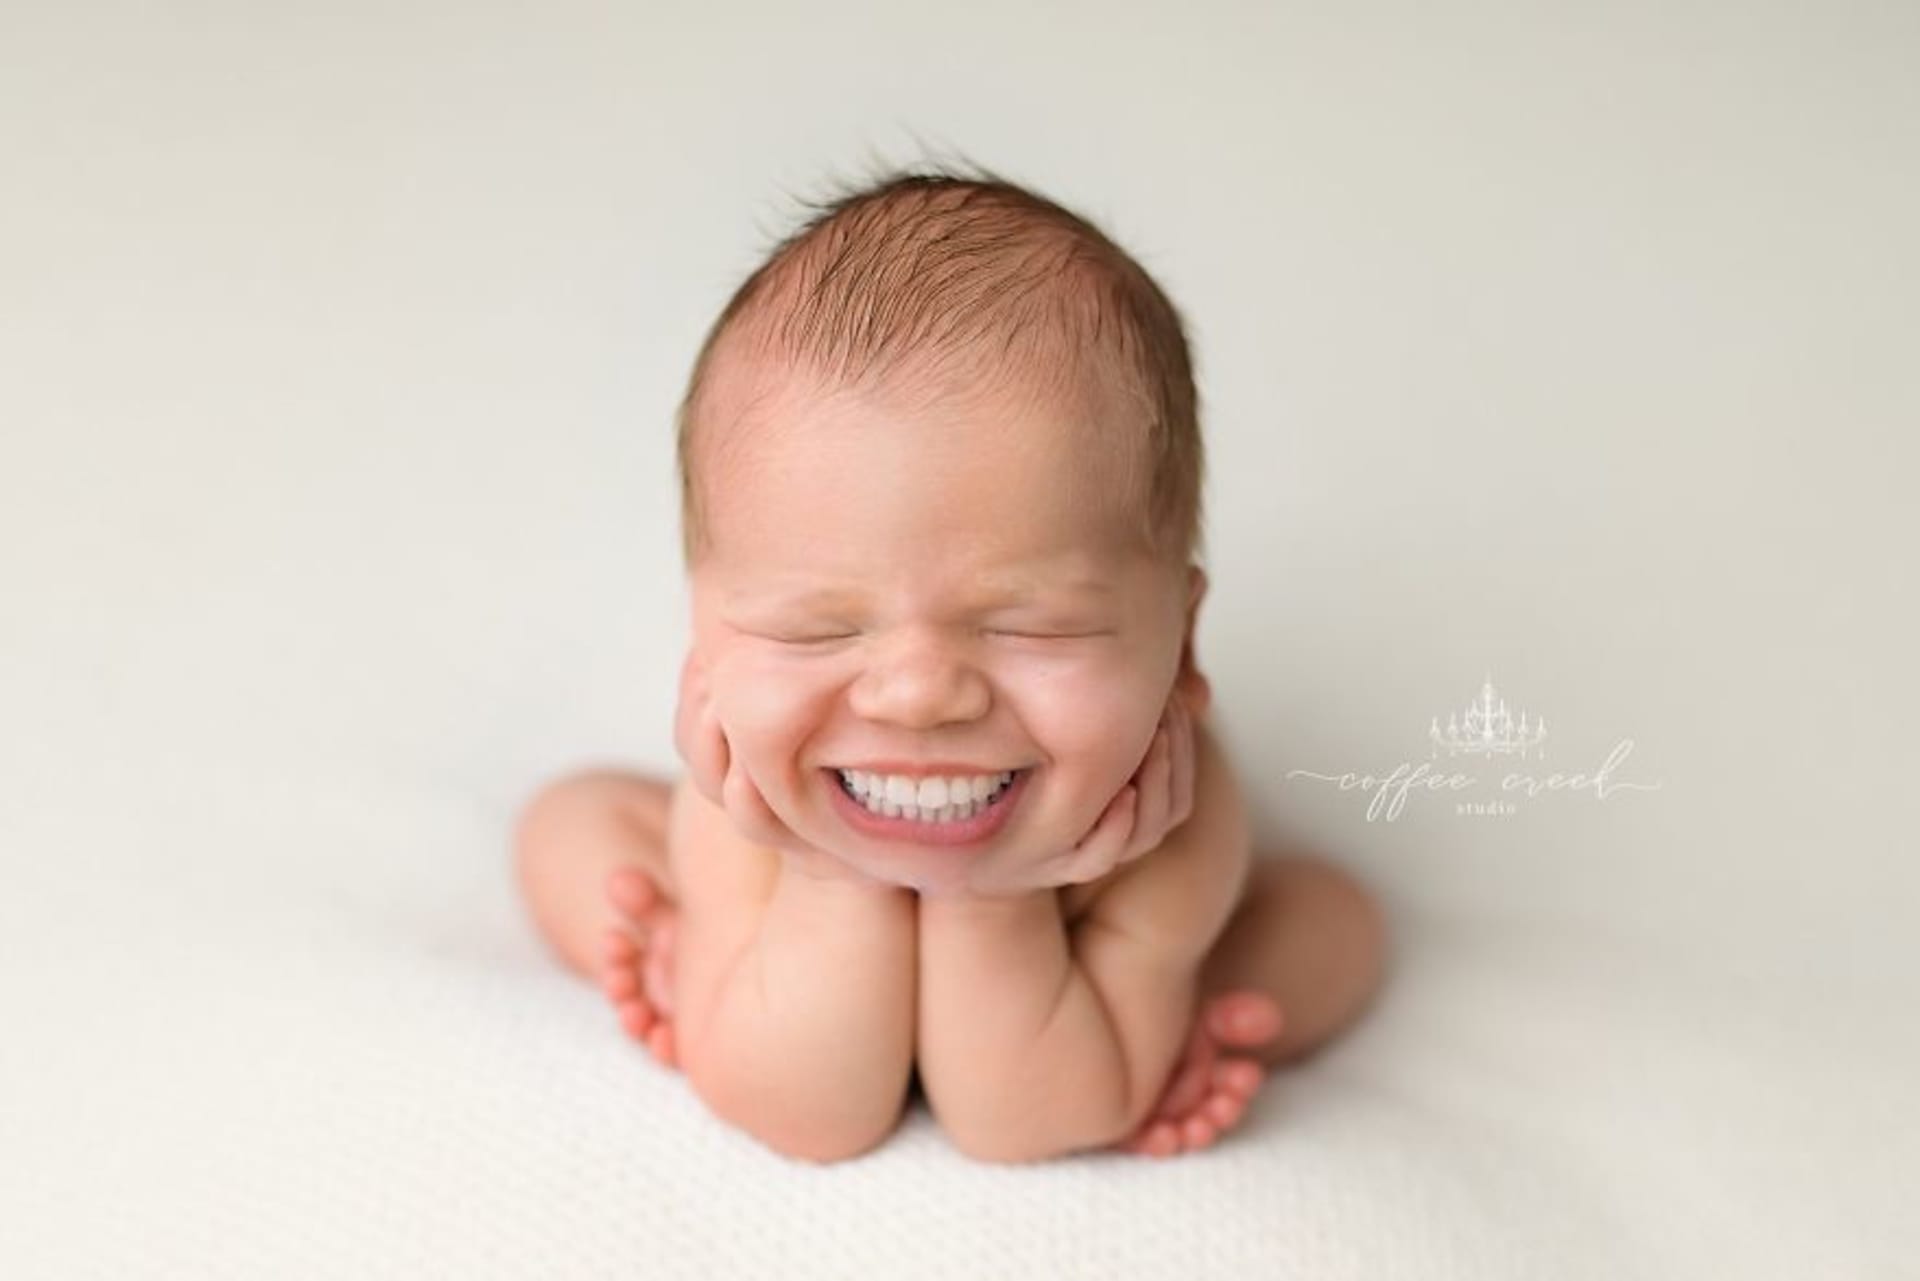 Fotografka pomocí aplikace přidala novorozencům zuby 13